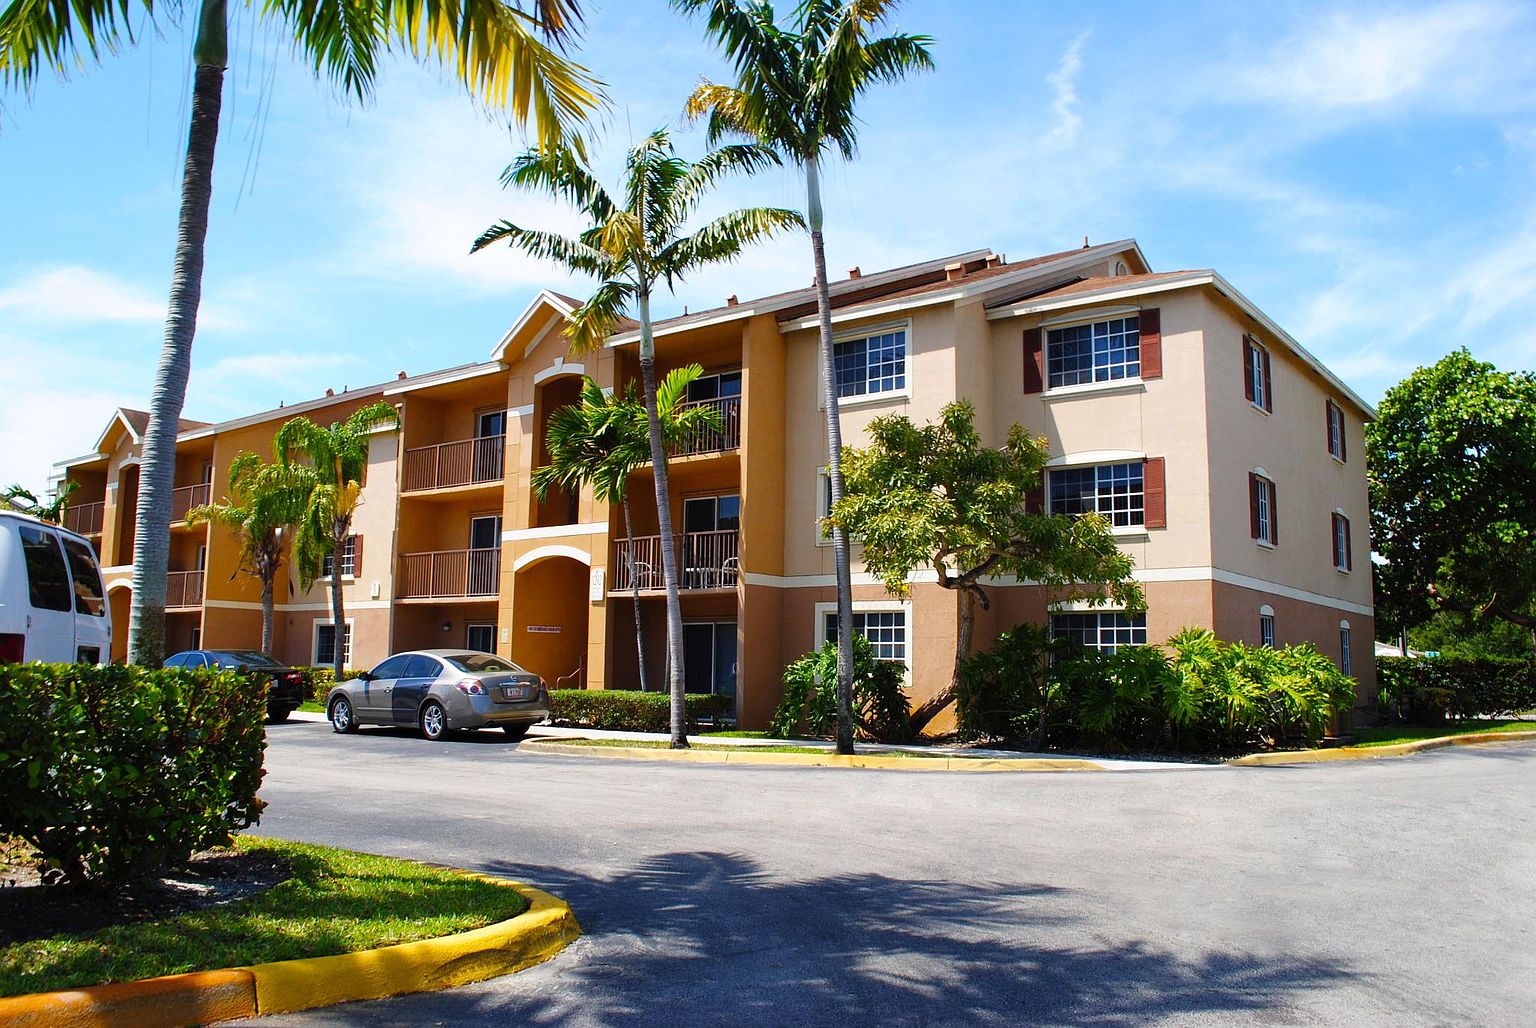 Hibiscus Pointe Apartment Rentals Miami